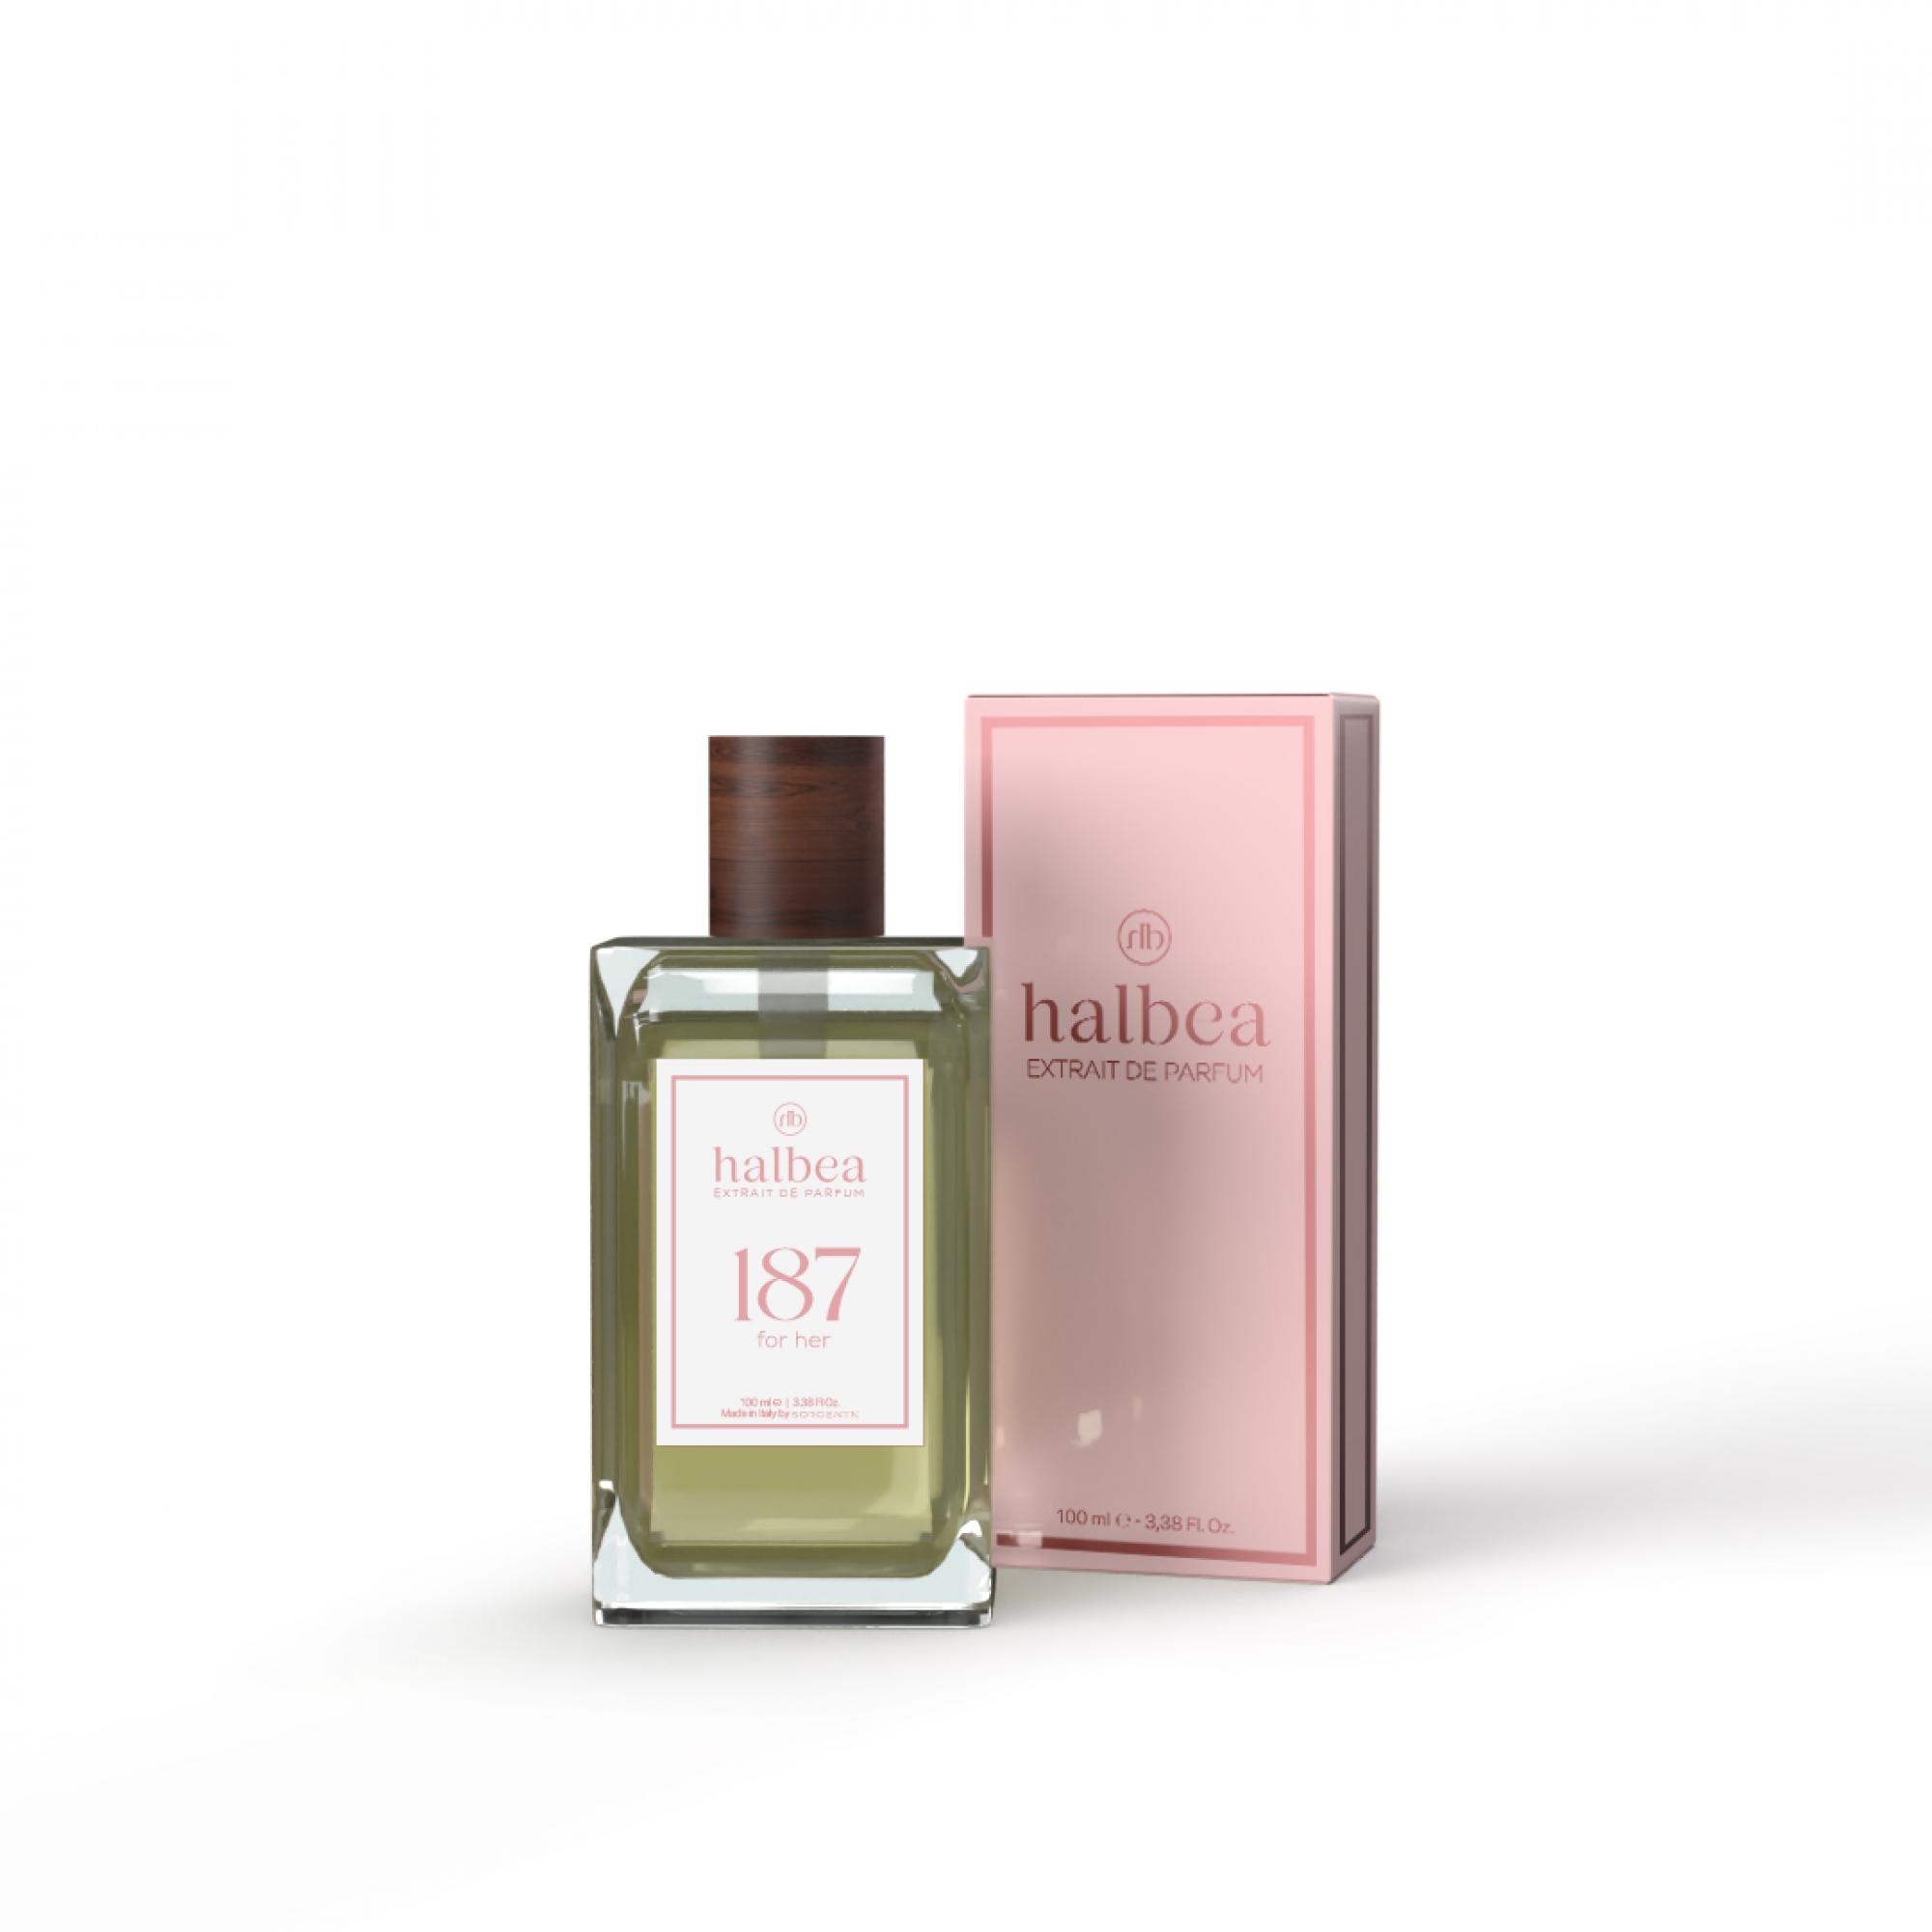 Halbea Parfum Nr. 187 insp. by Versace Eros 100ml